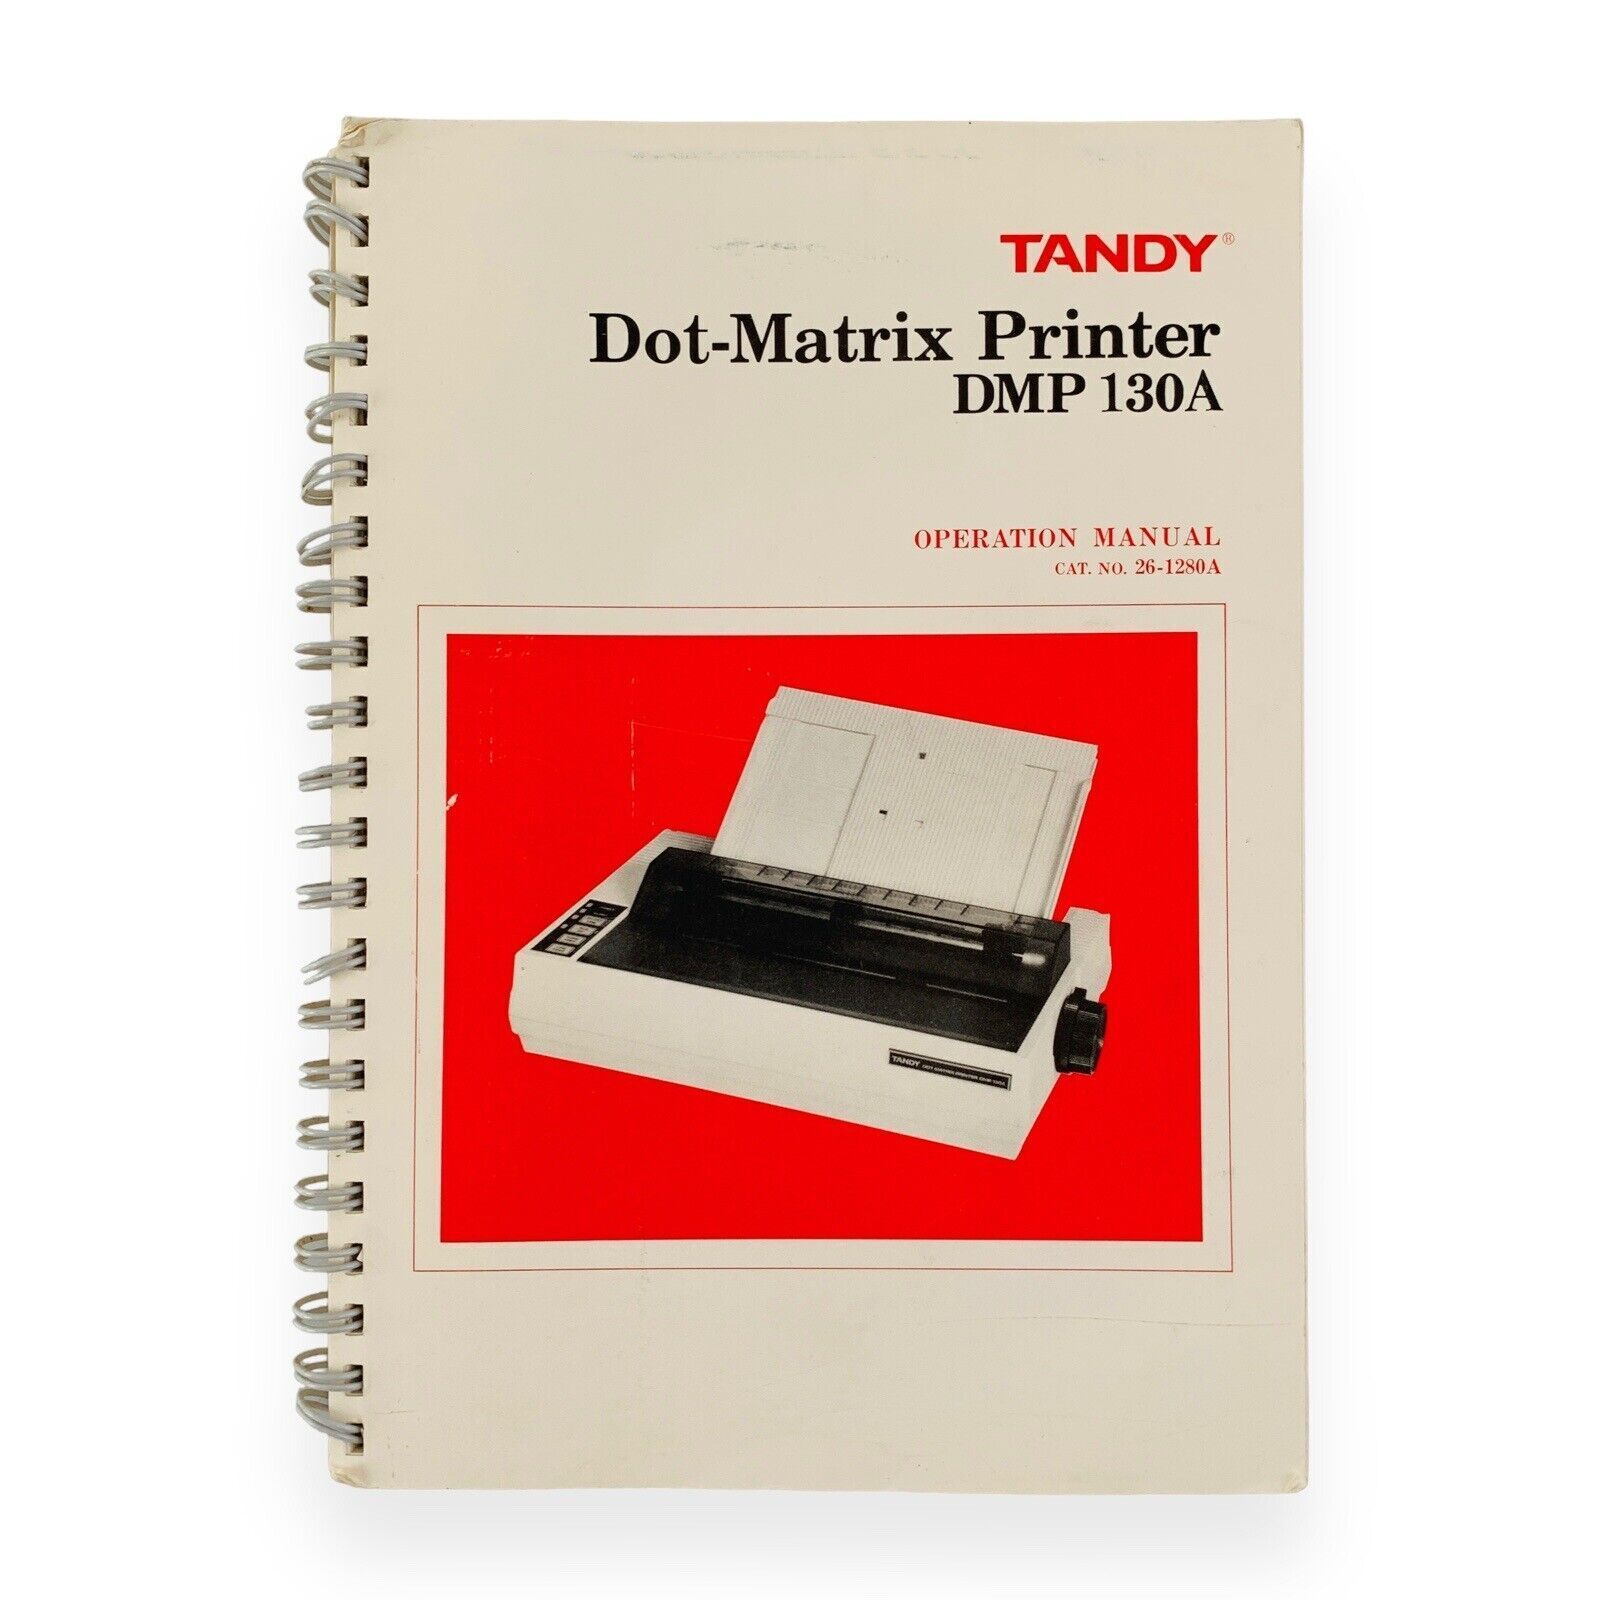 Tandy Dot Matrix Printer DMP 130A Operation Manual VTG 1986 Cat No. 26-1280A